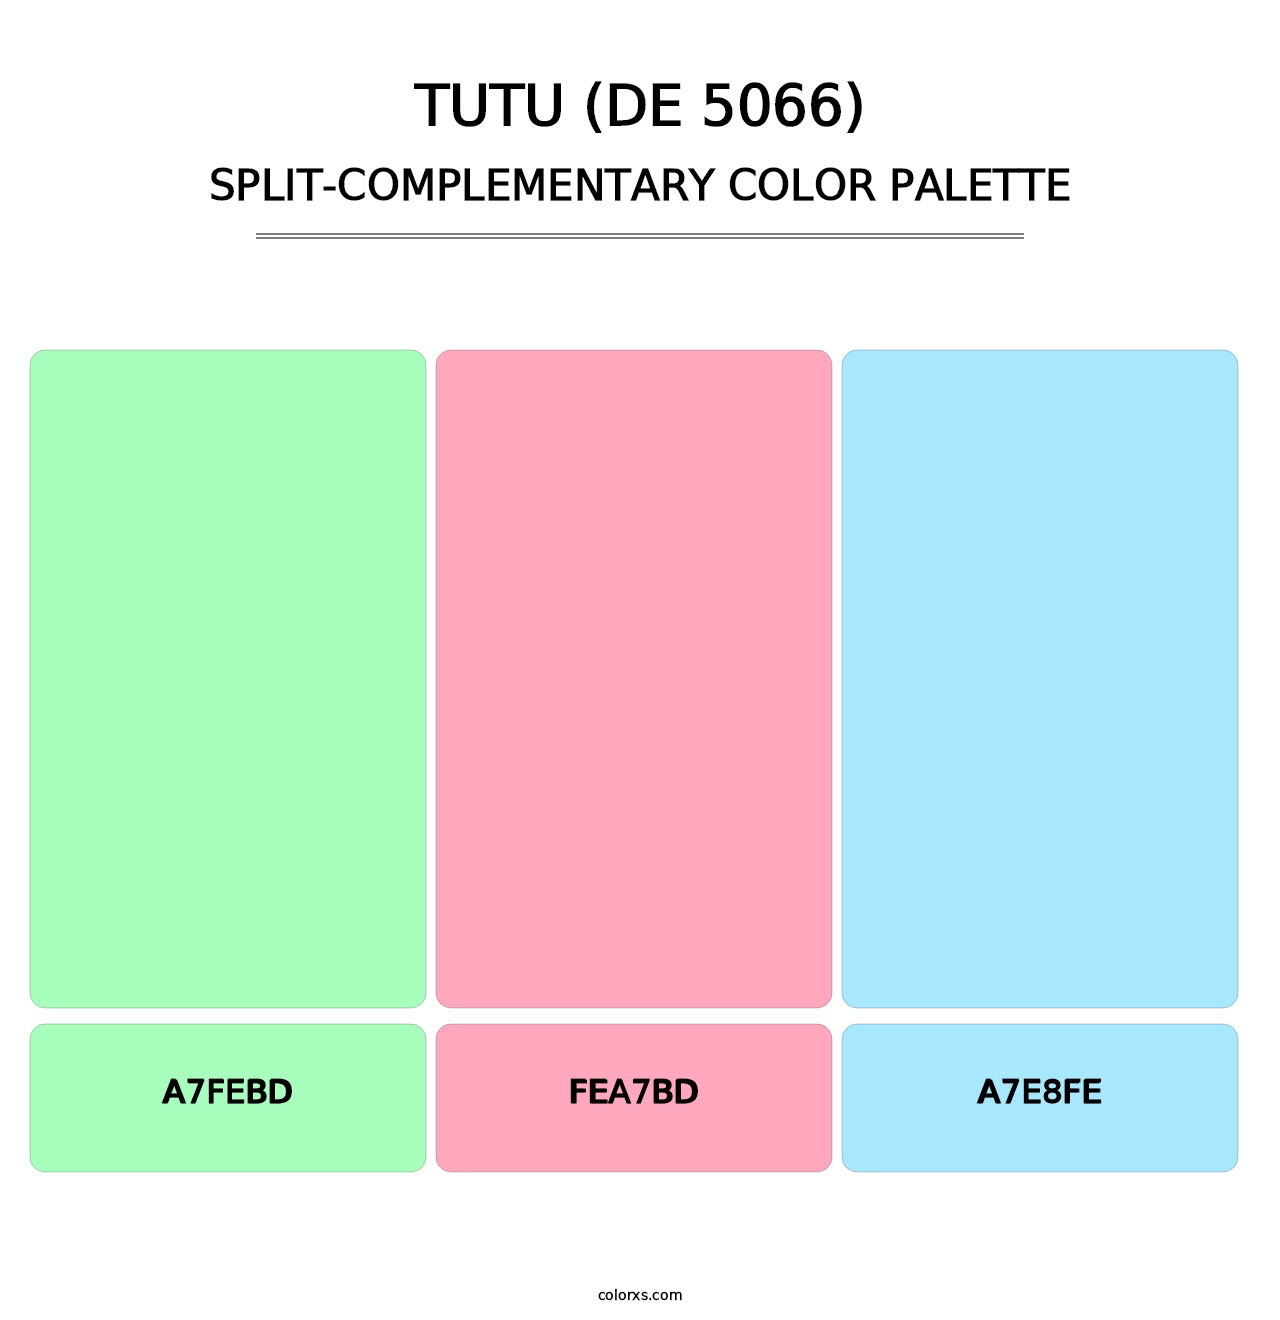 Tutu (DE 5066) - Split-Complementary Color Palette